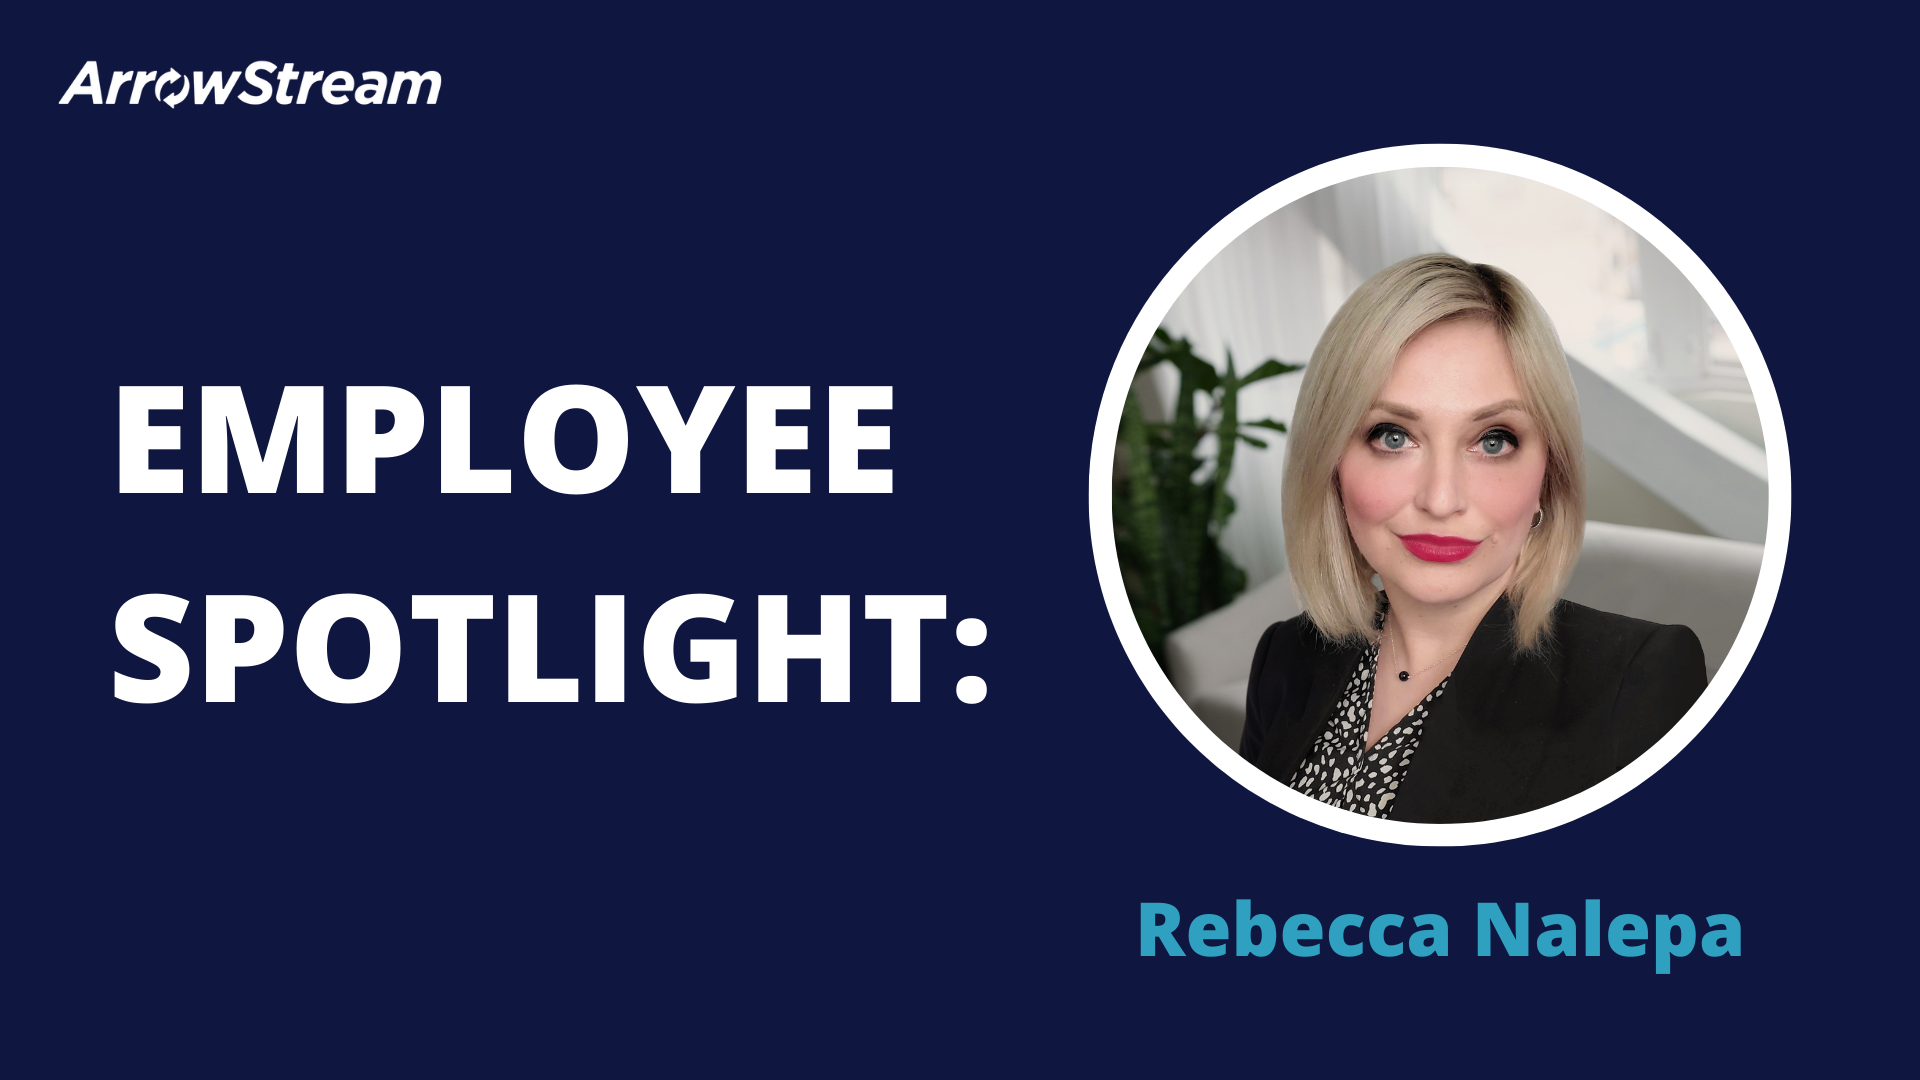 Employee Spotlight - Rebecca Nalepa - ArrowStream